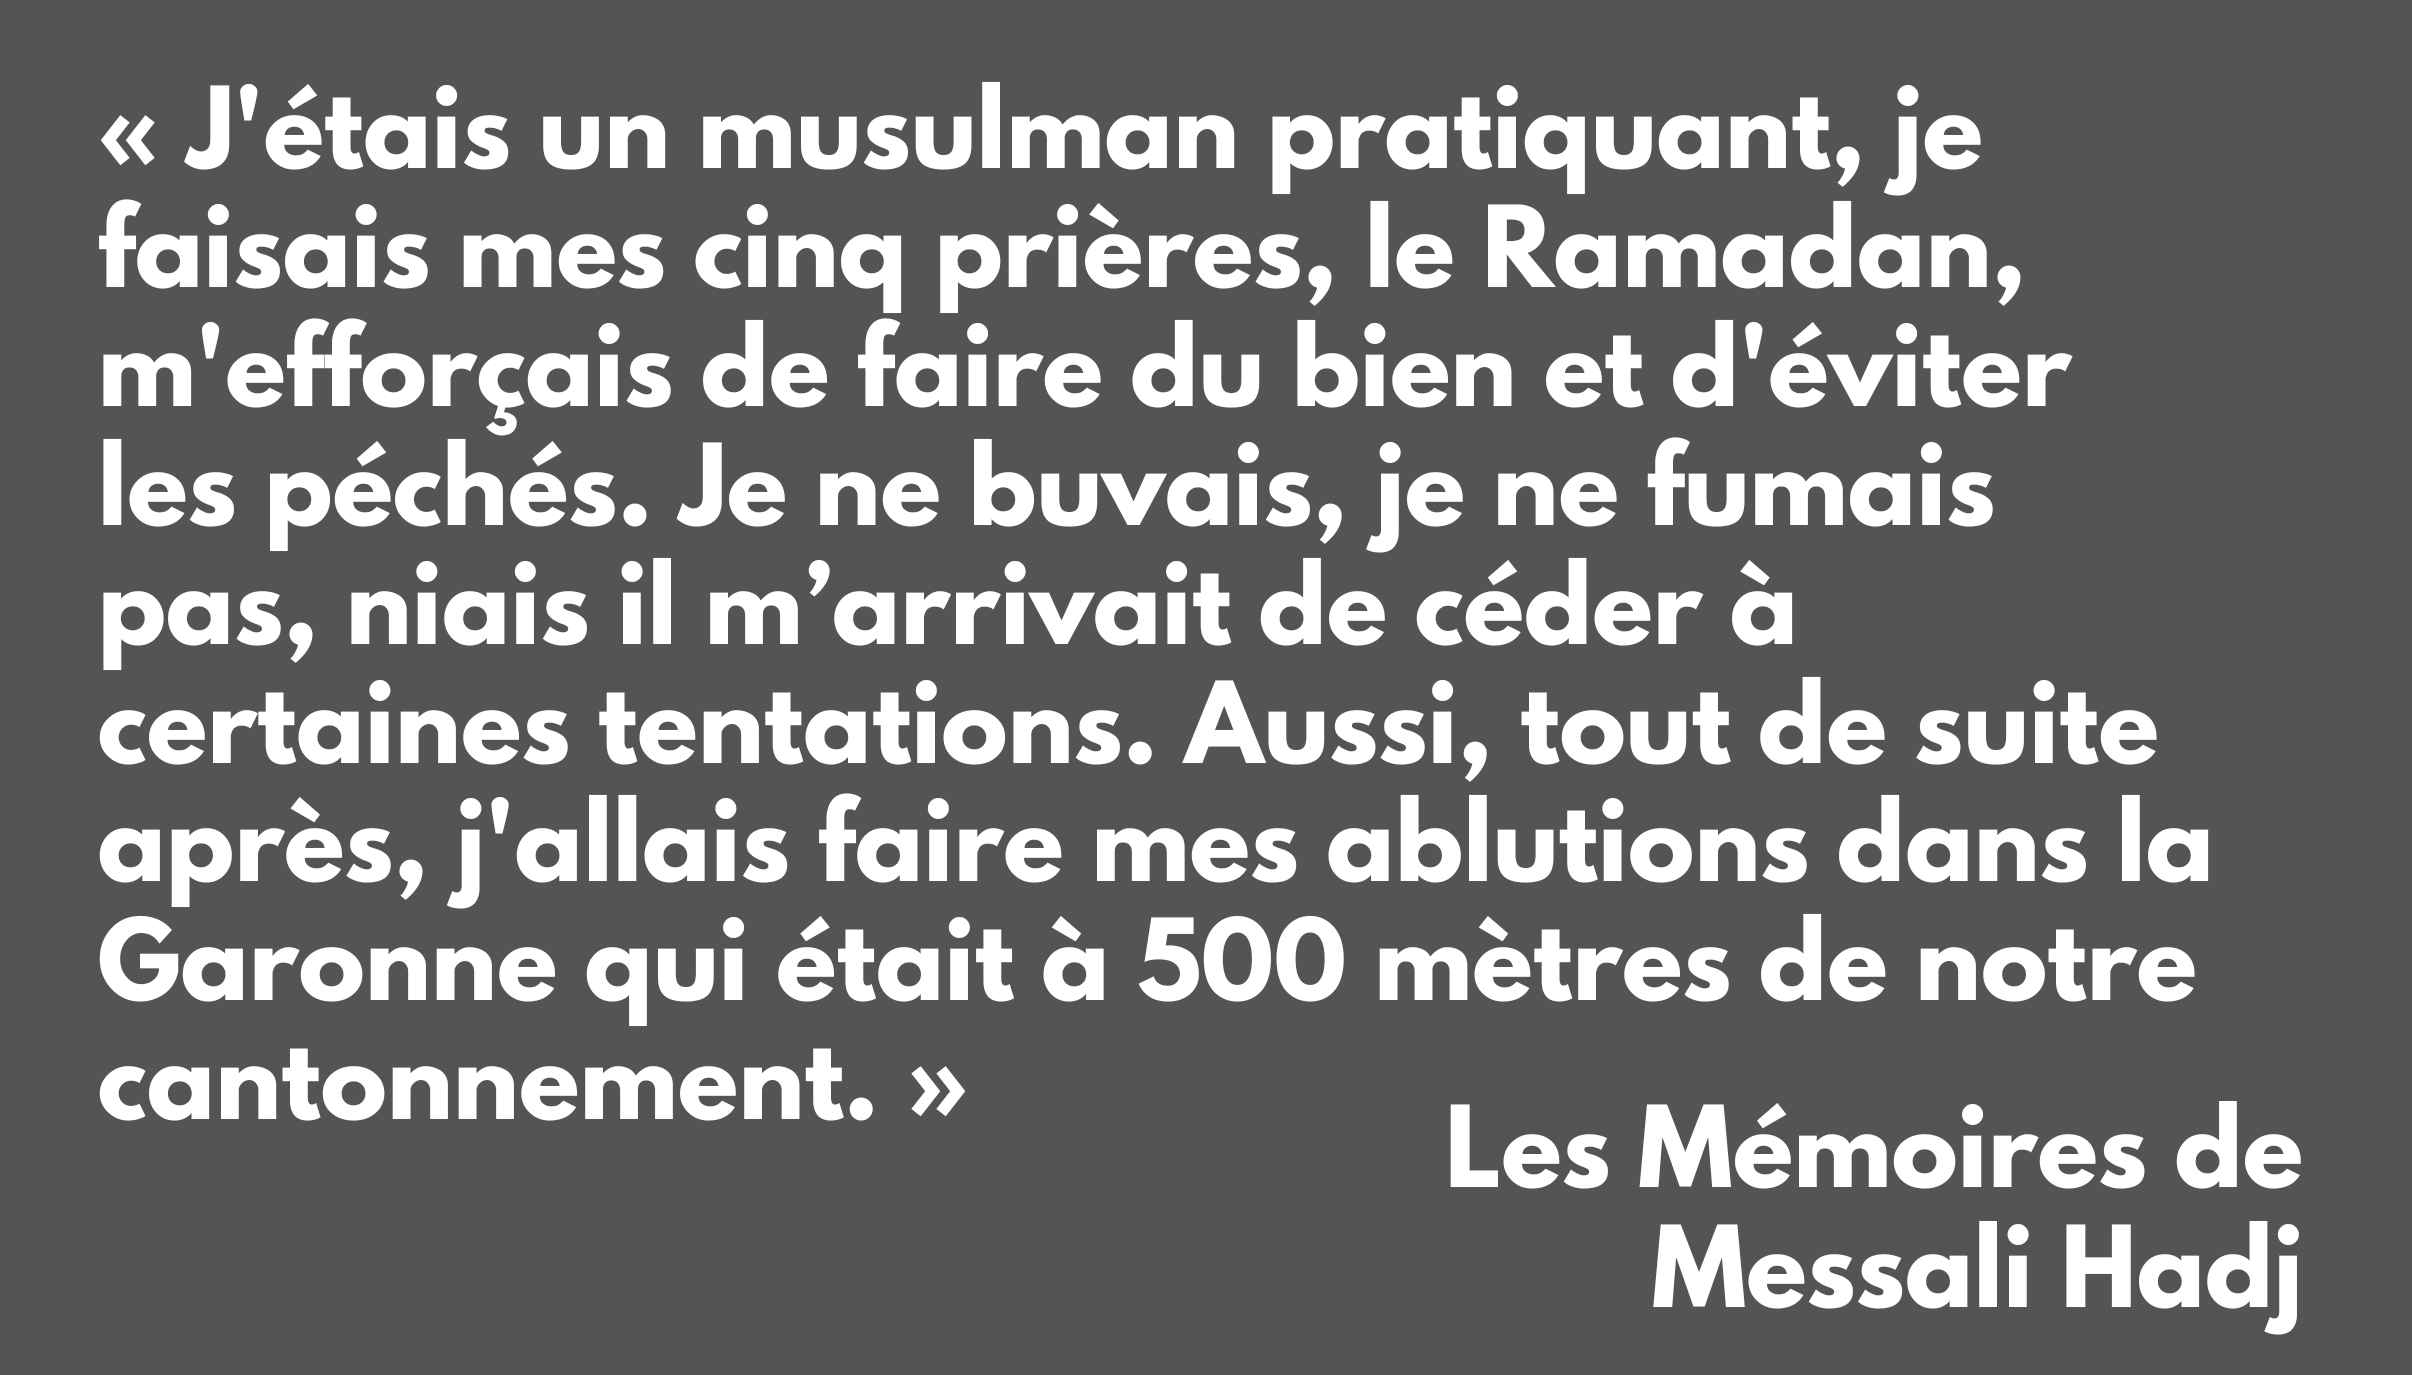 Les Mémoires de Messali Hadj (1898 - 1938)